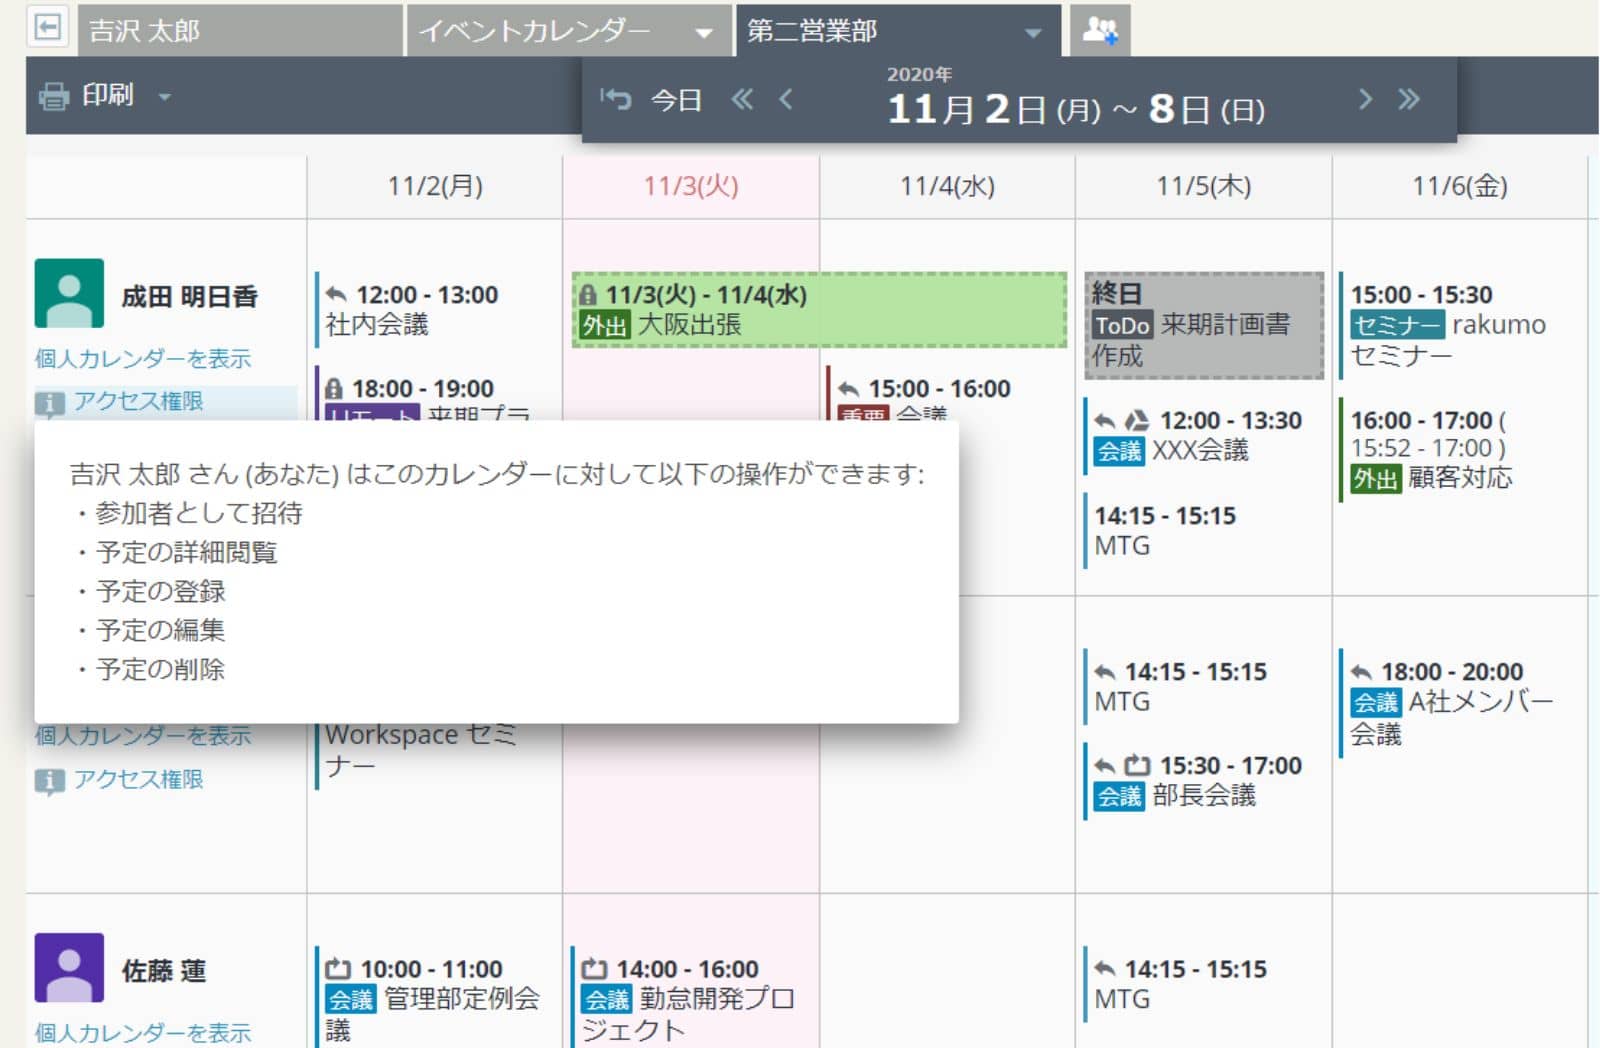 rakumo カレンダー 「アクセス権限」にカーソルを合わせて権限を表示